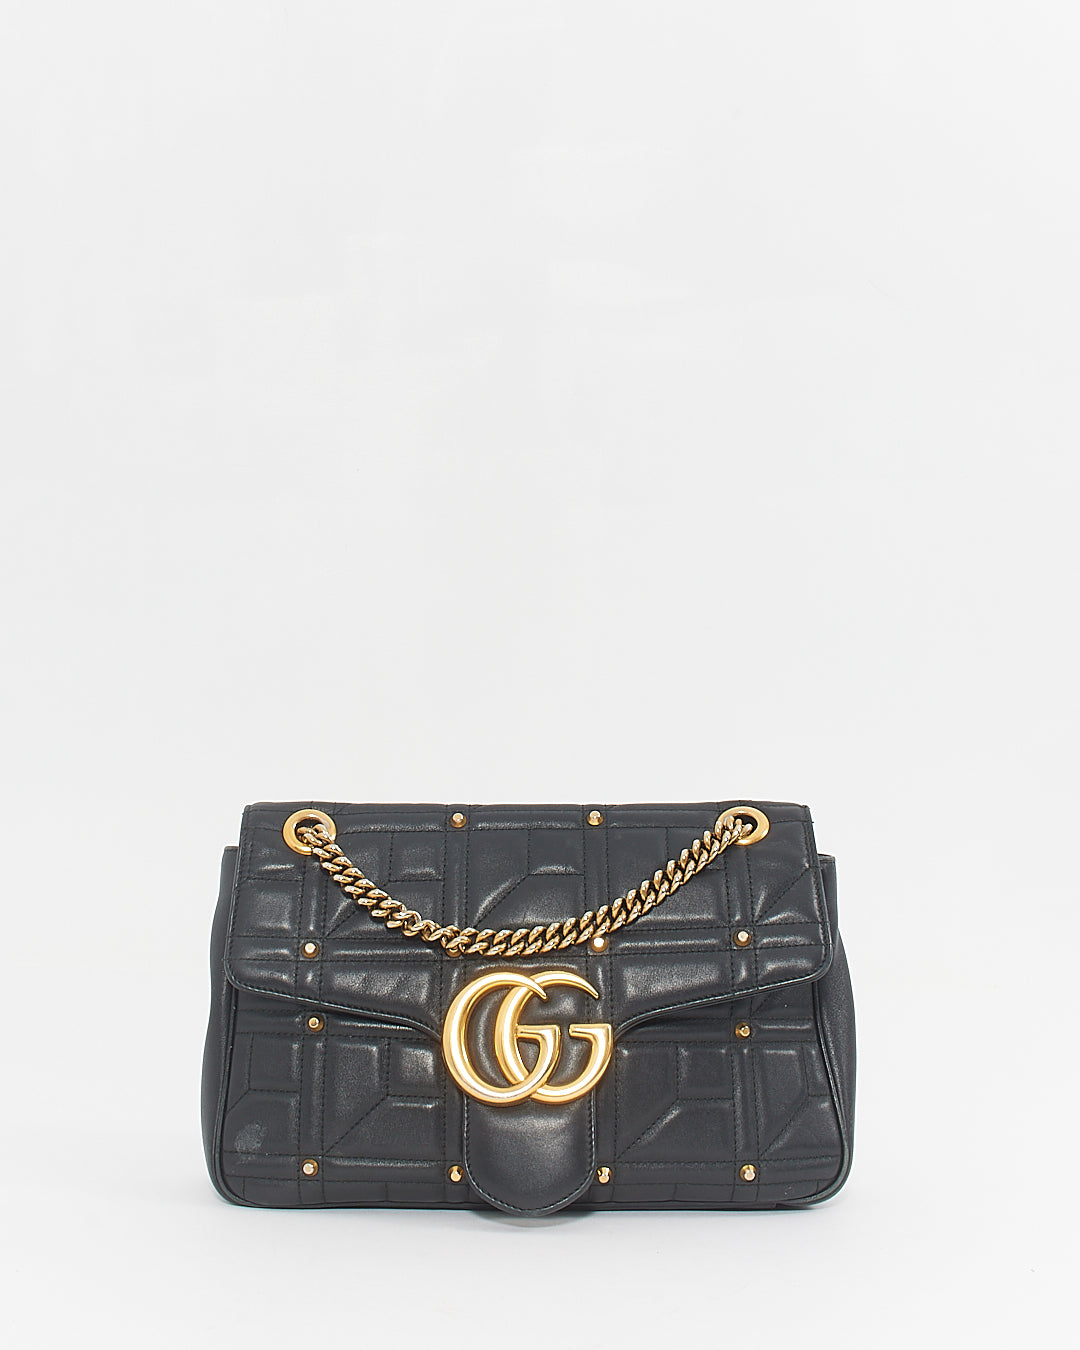 Gucci Black Leather Studded Medium Marmont Shoulder Bag